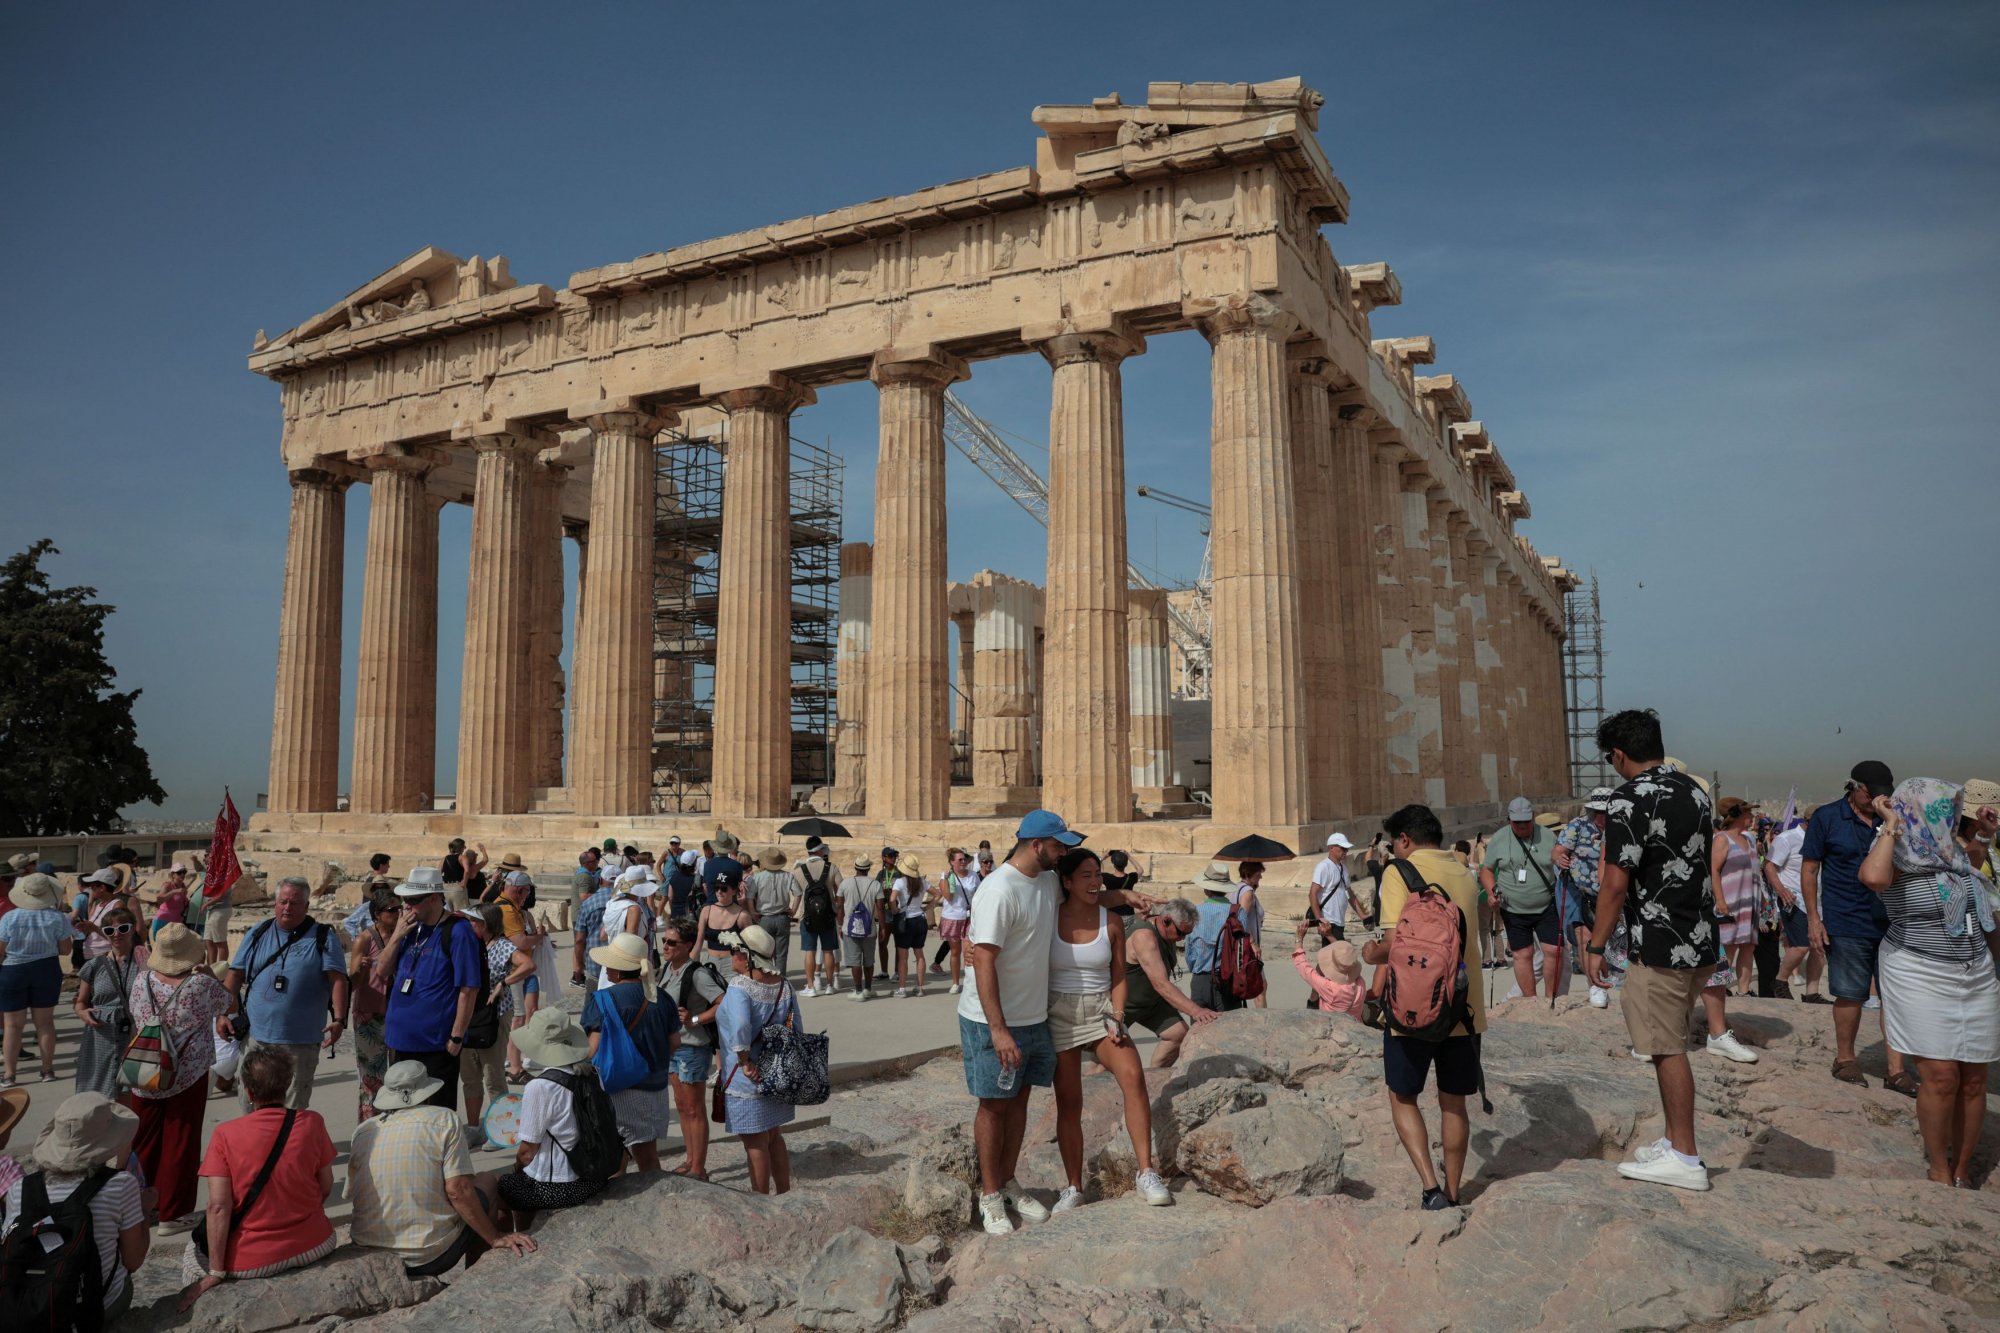 Τουρισμός: Η Ελλάδα στους top15 προορισμούς για ταξιδιώτες από Αυστραλία, Καναδά και ΗΠΑ και για το 2024